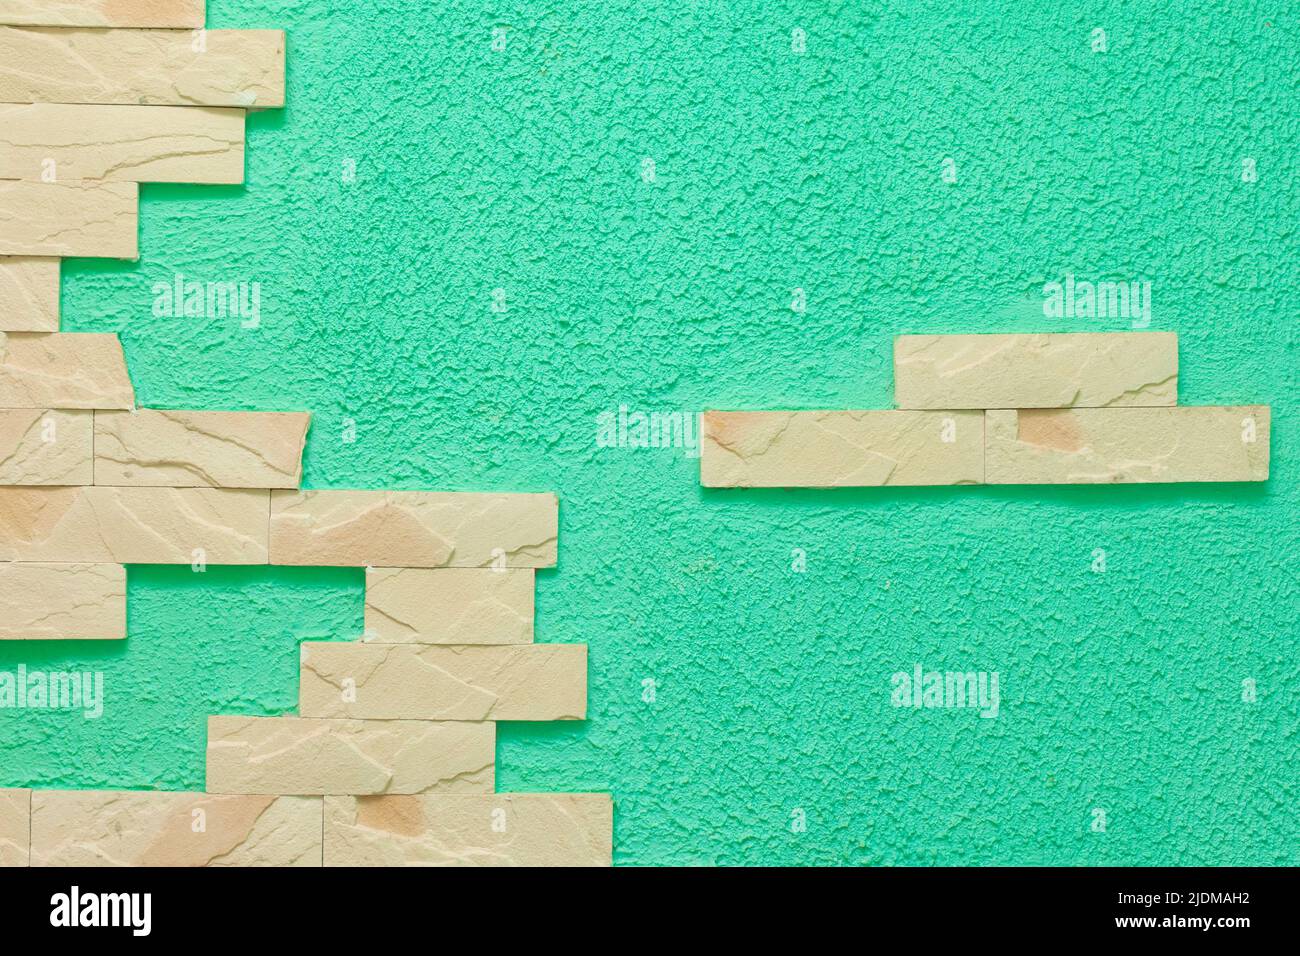 Helles Ziegelelement Fragment abstraktes Innenarchitektur Wandmuster grün oder aquamarin Farbe Textur Fassade Hintergrund. Stockfoto